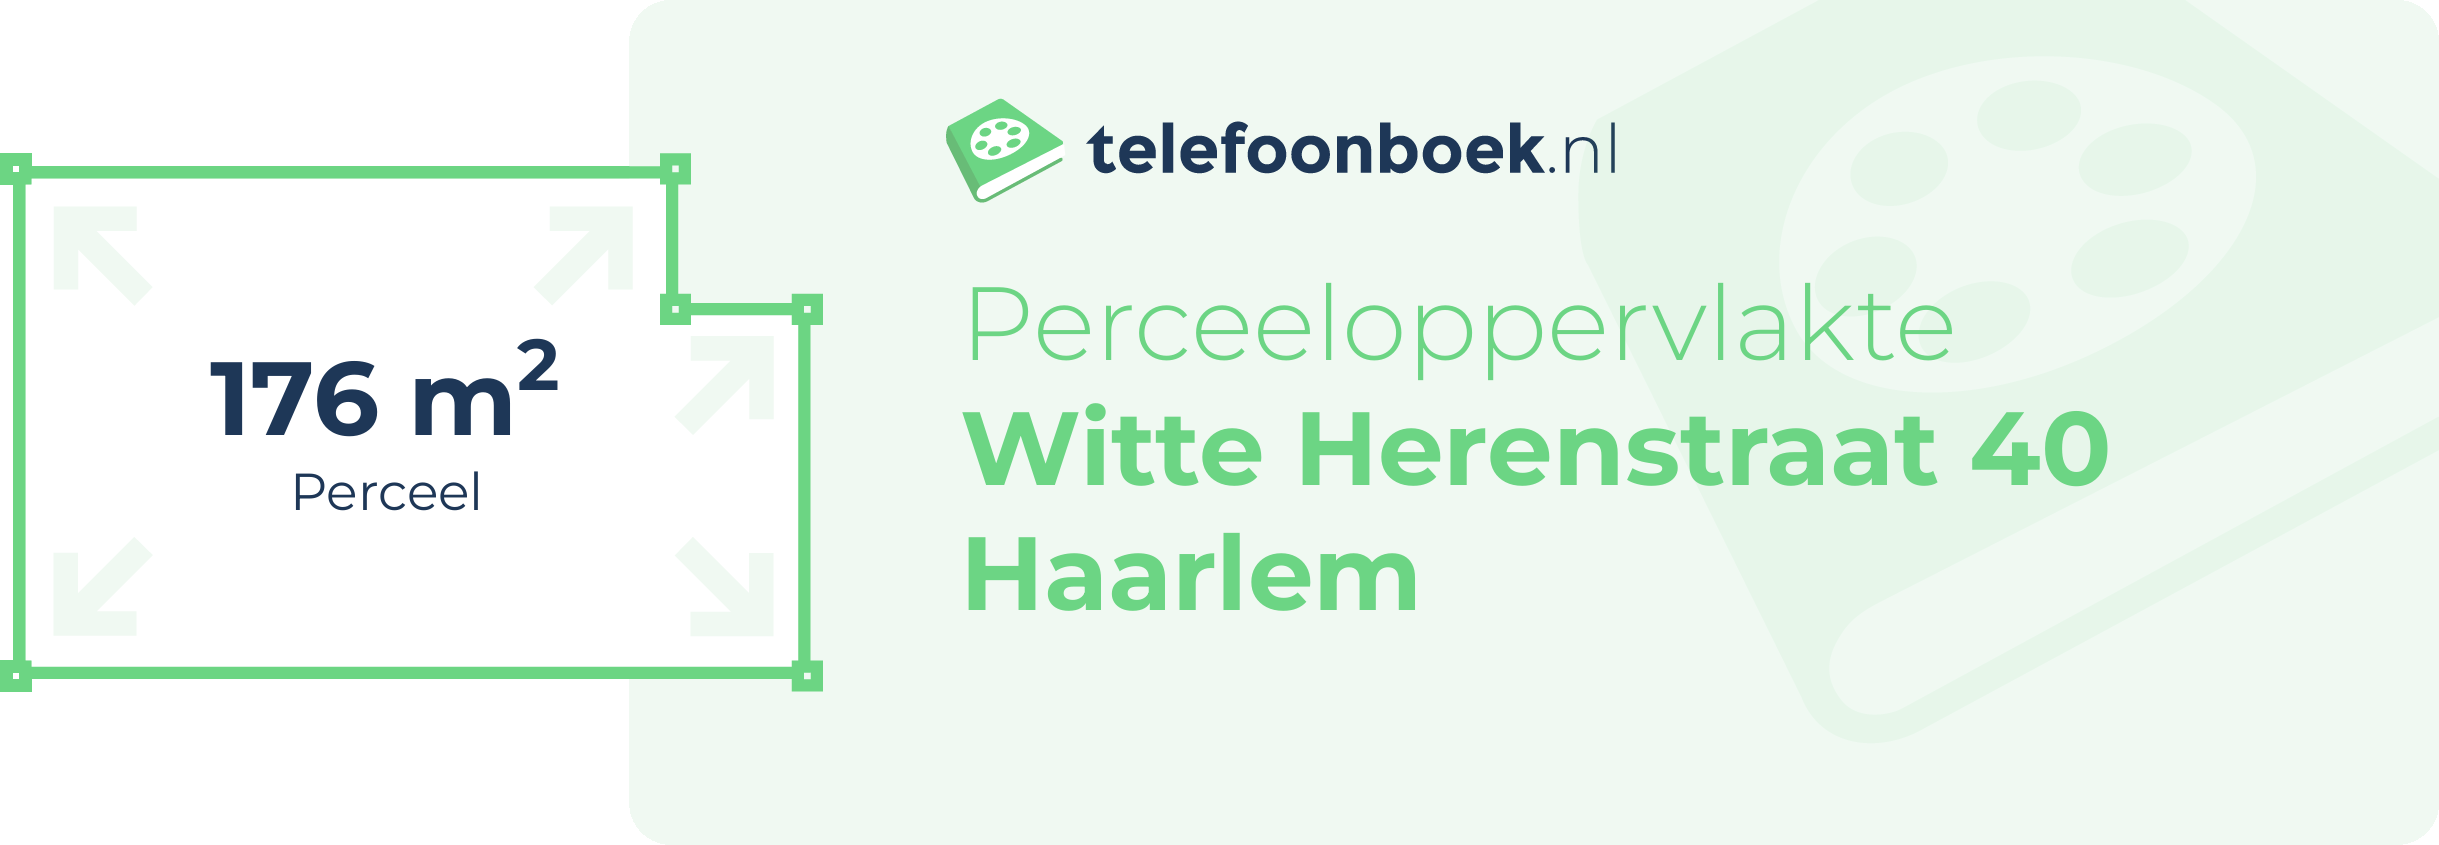 Perceeloppervlakte Witte Herenstraat 40 Haarlem